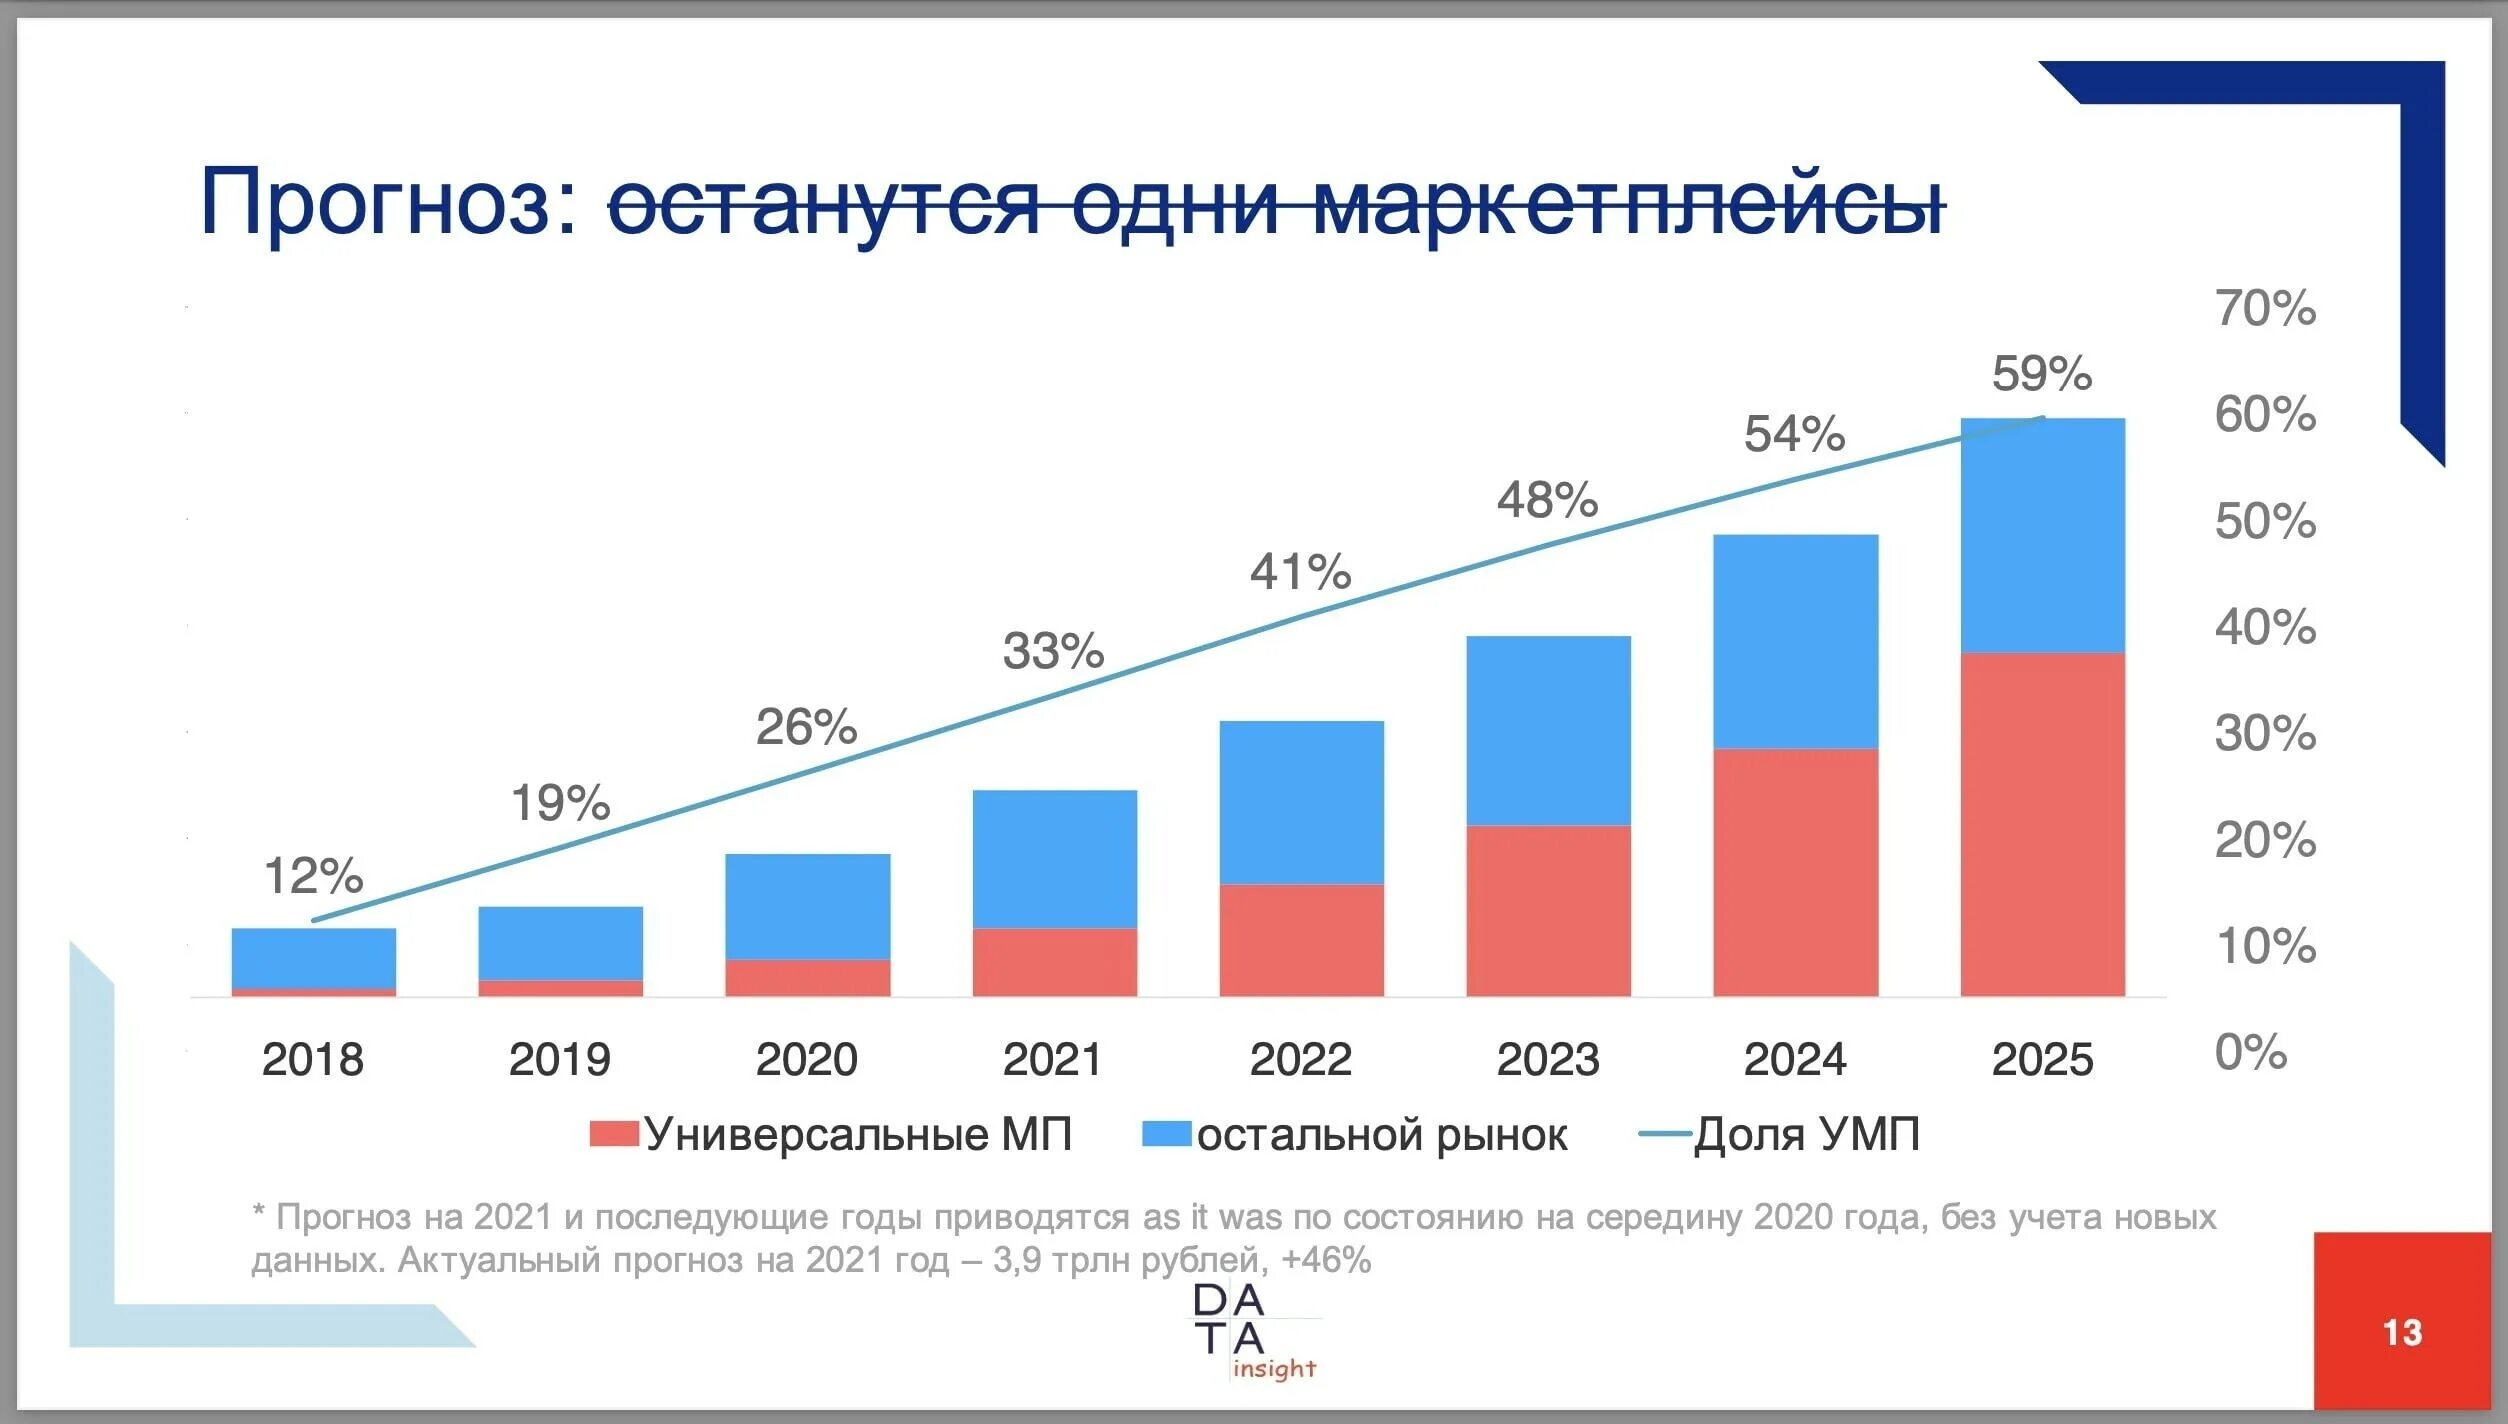 Рынок маркетплейсов в россии. Прогноз развития рынка. Развитие маркетплейсов. Рынок маркетплейсов 2024. Прогноз на 2025.